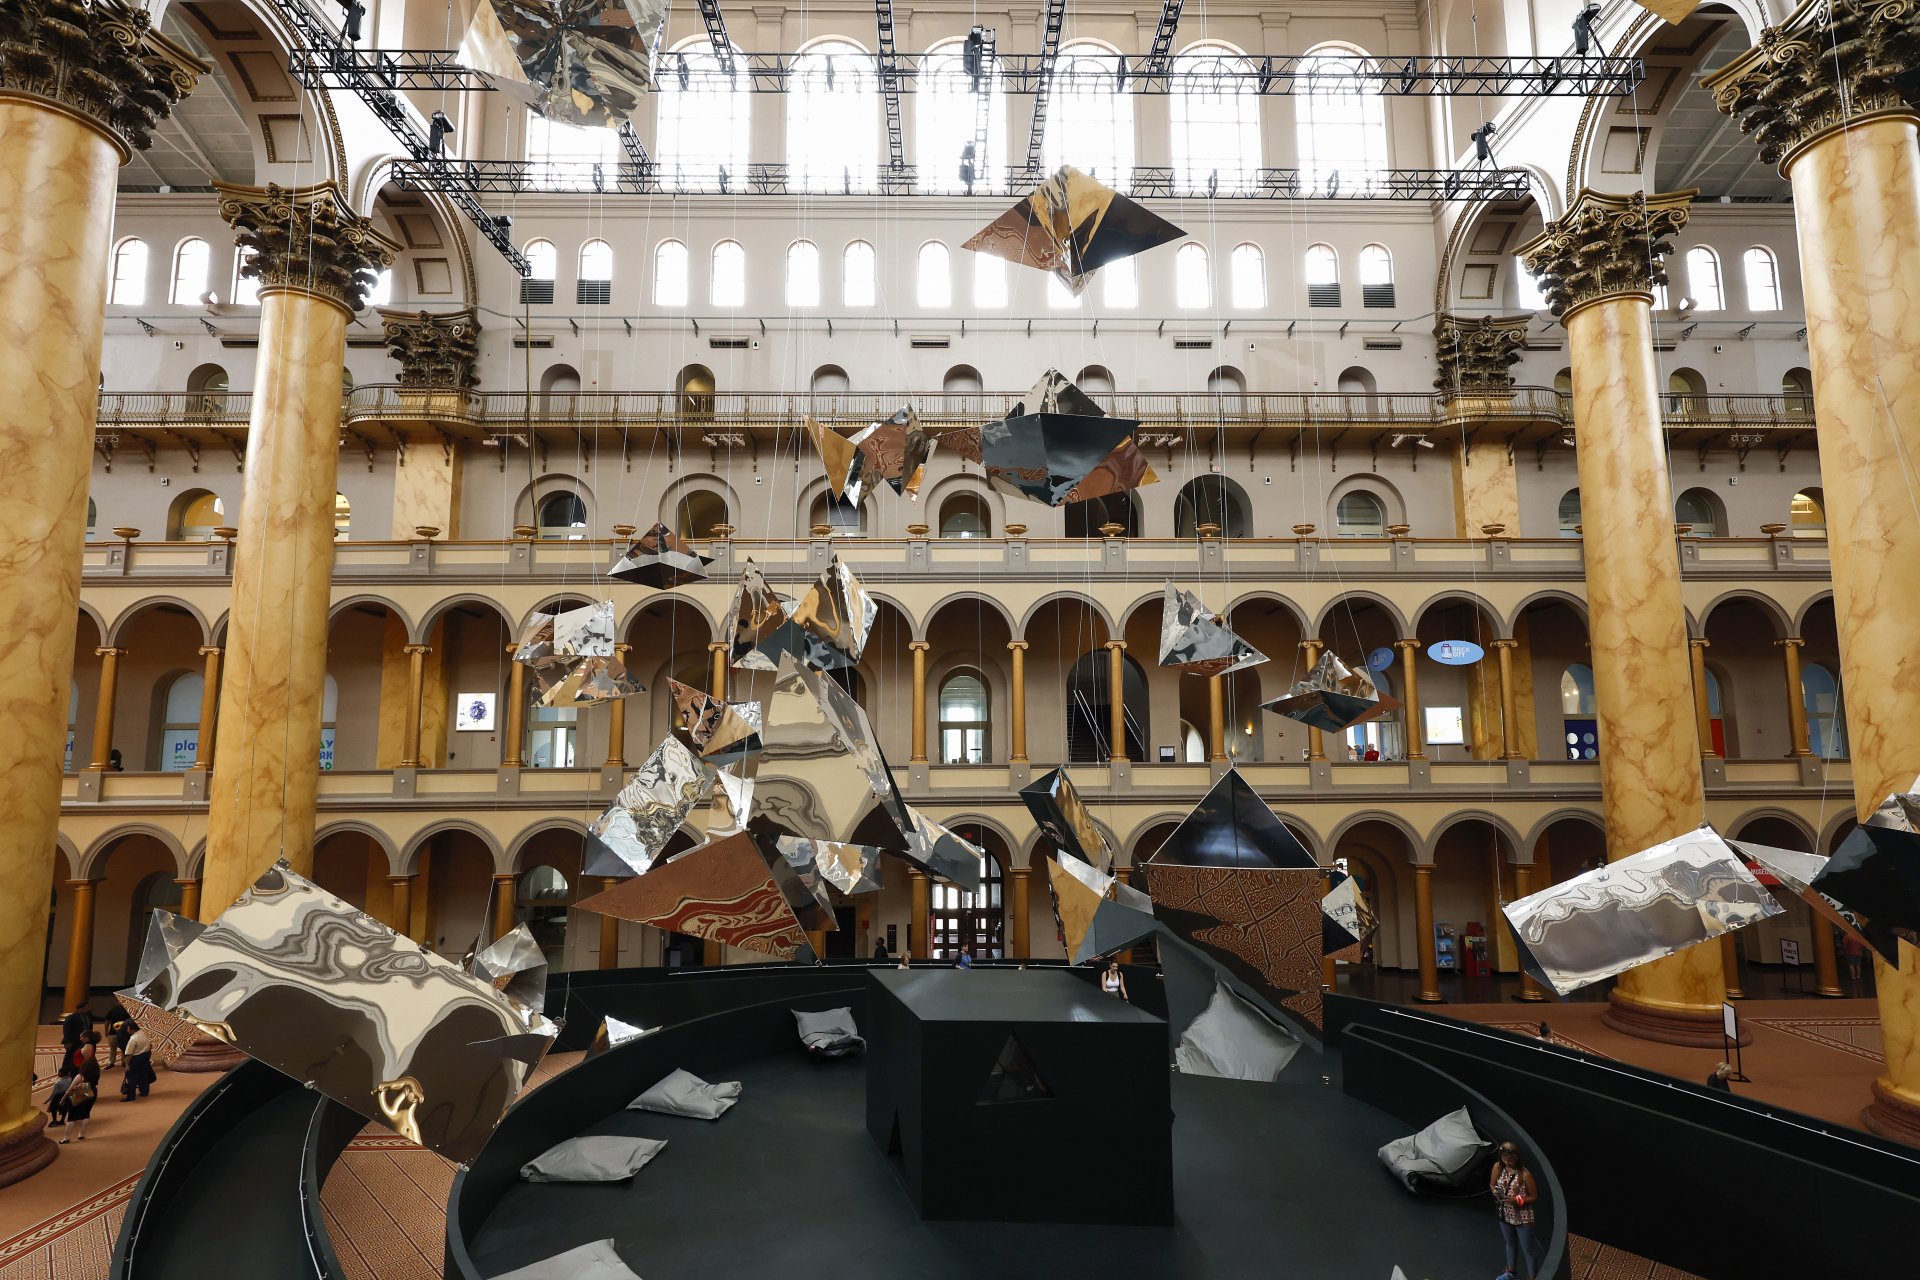  Експозицията, проектирана от художника и архитект Сучи Реди, включва покрития с огледални геометрични форми и е част от инсталацията Summer Block Party на музея